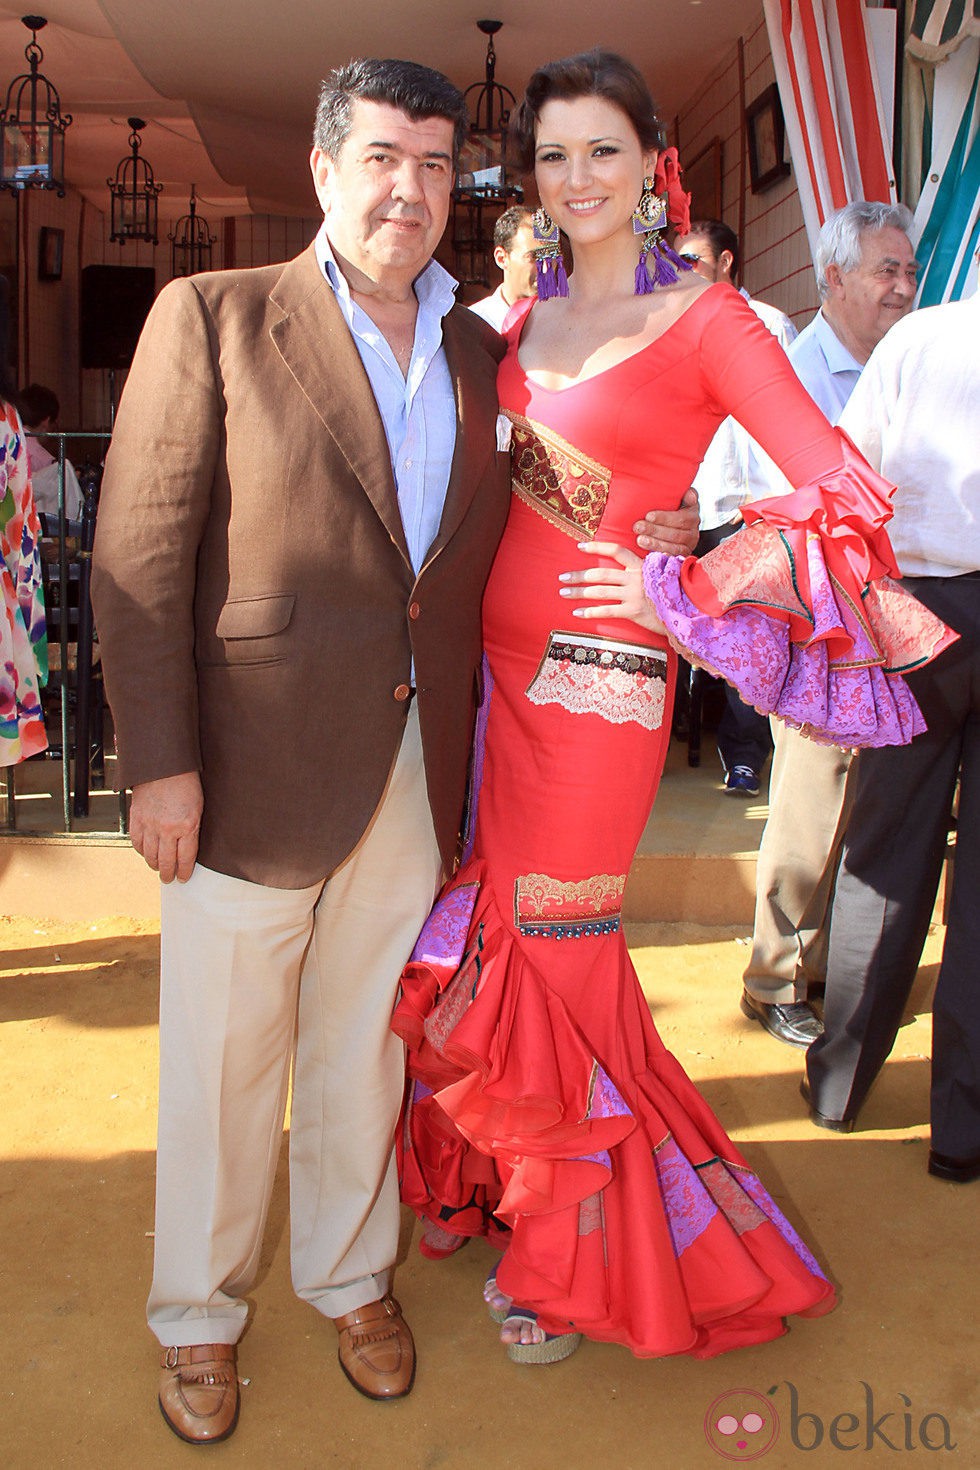 María Jesús Ruiz y José María Gil Silgado en la Feria de Abril 2013